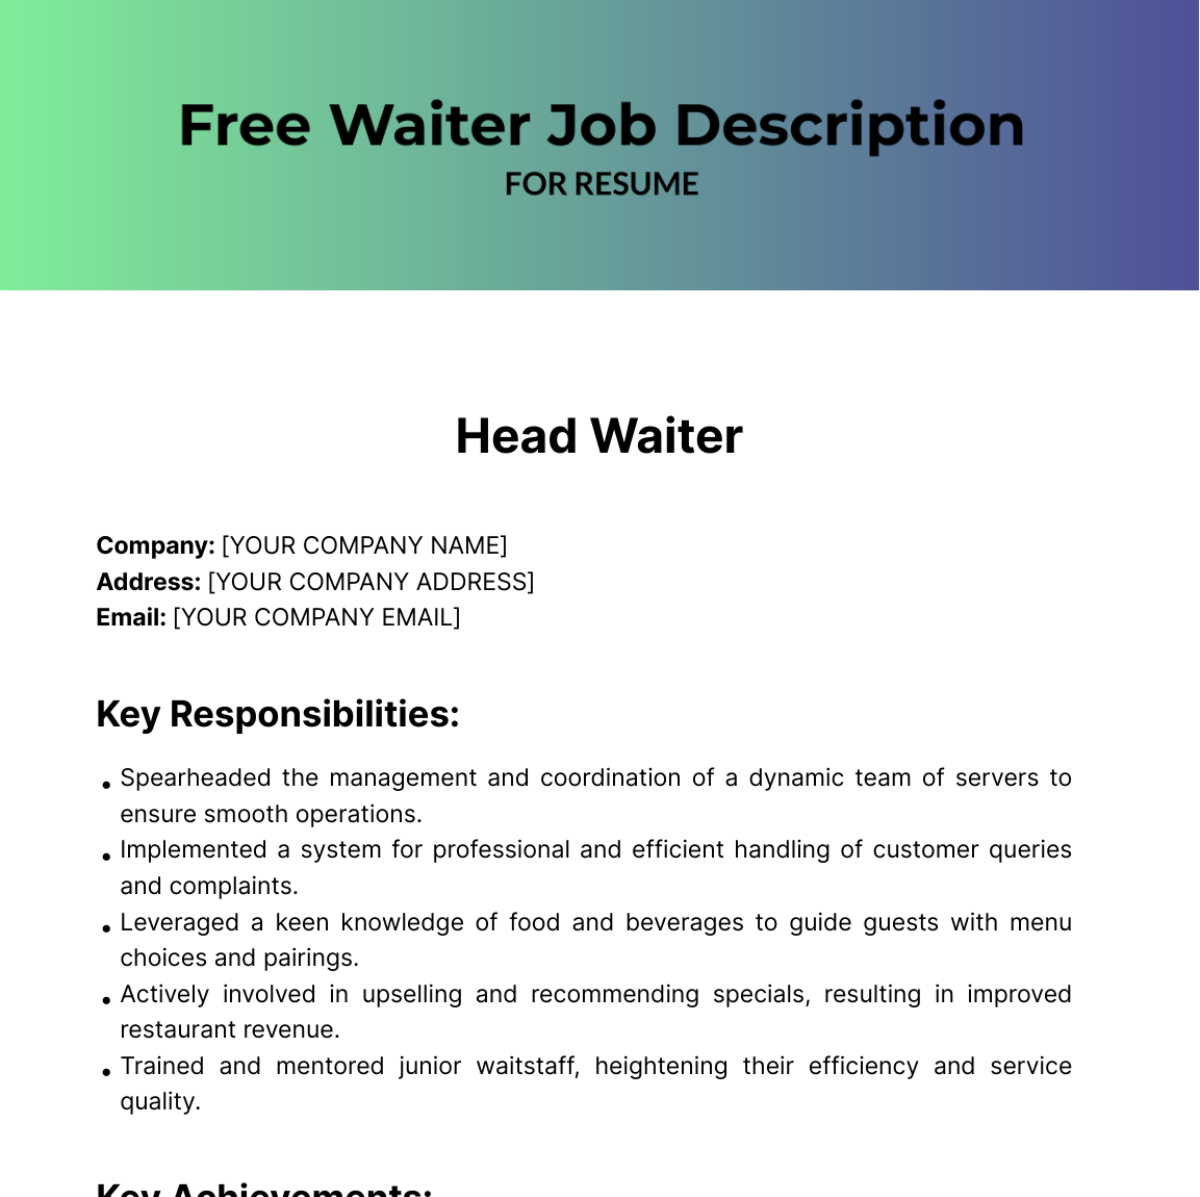 Waiter Job Description for Resume Template